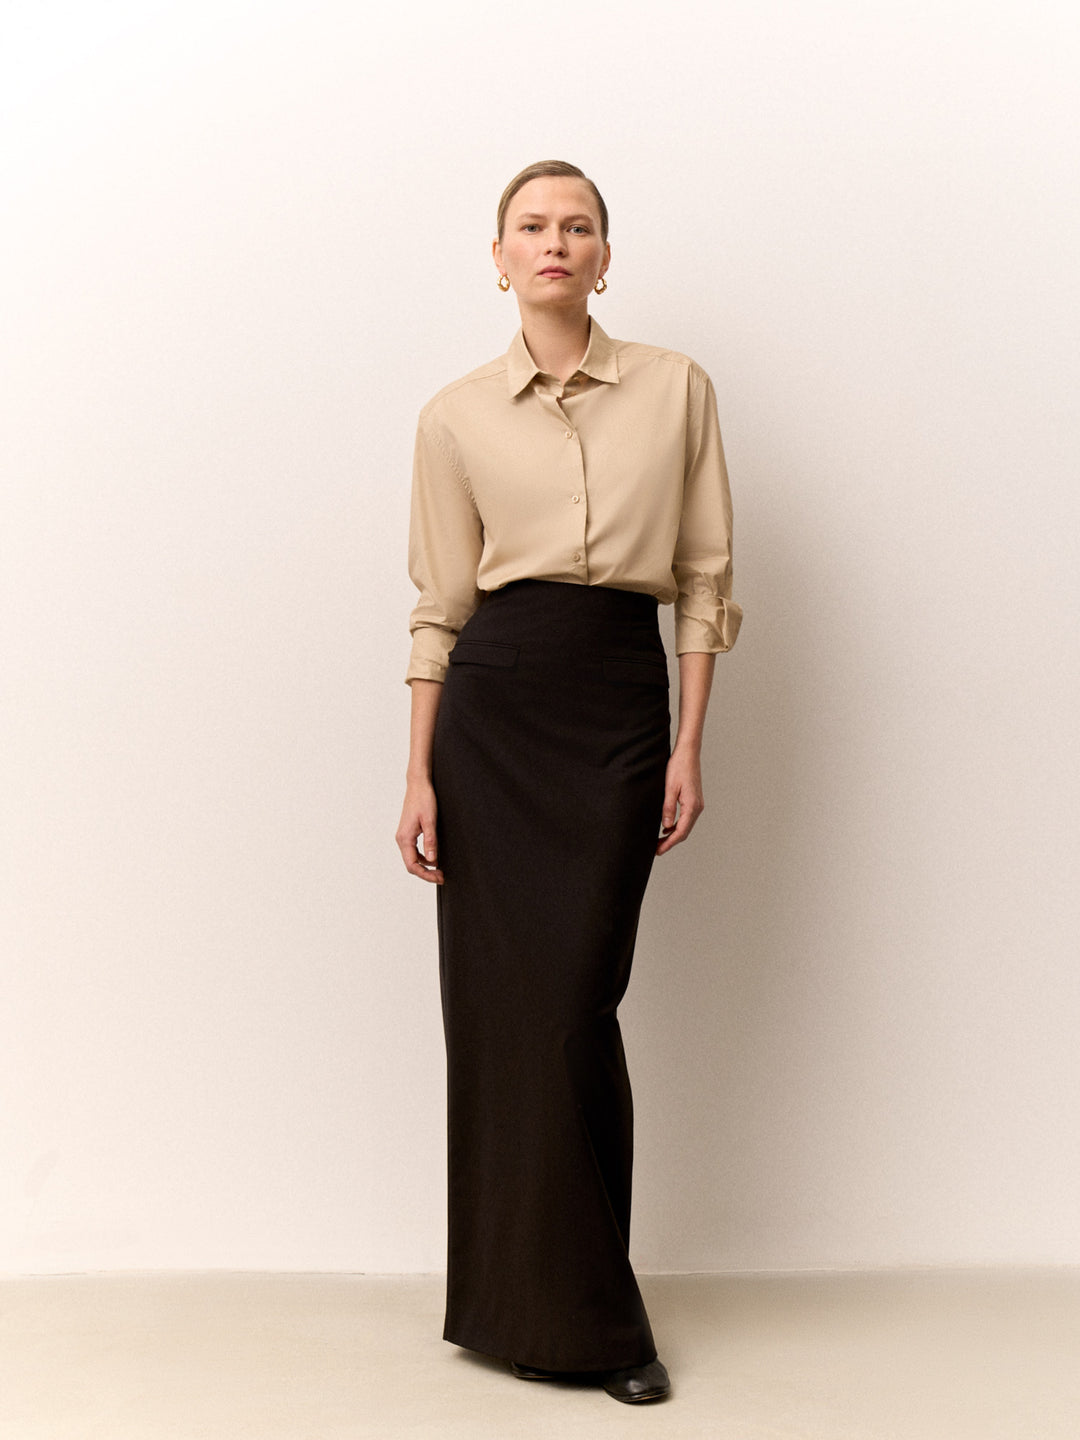 Women - High waist - Maxi - Skirt - Black